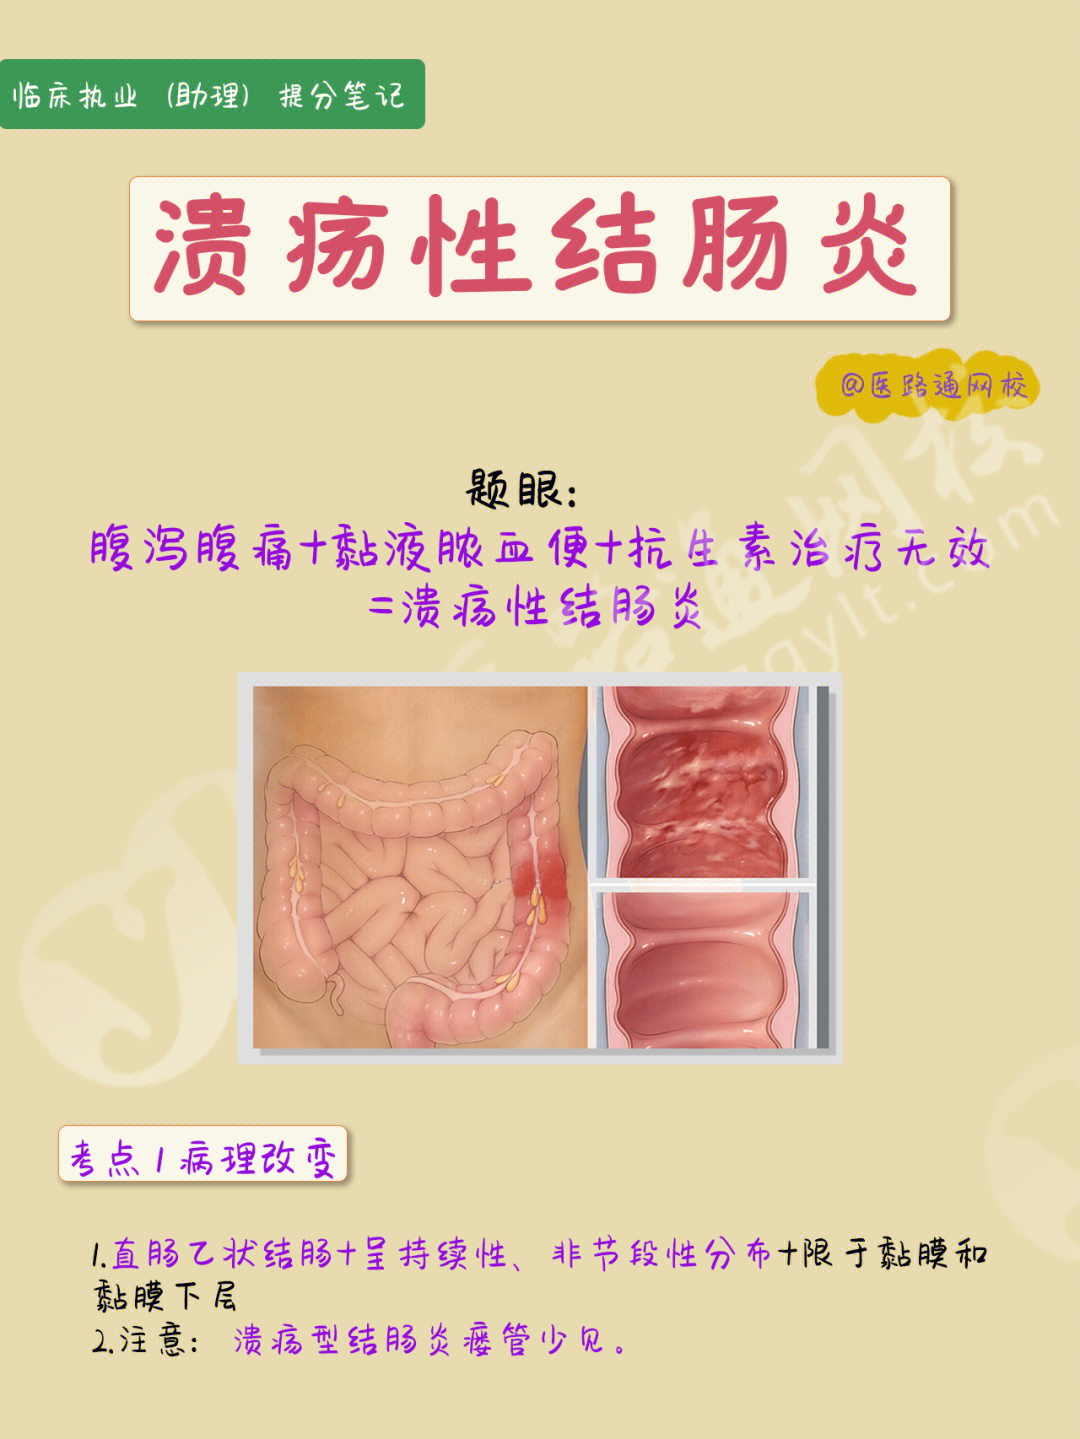 结肠炎疼痛位置图图片